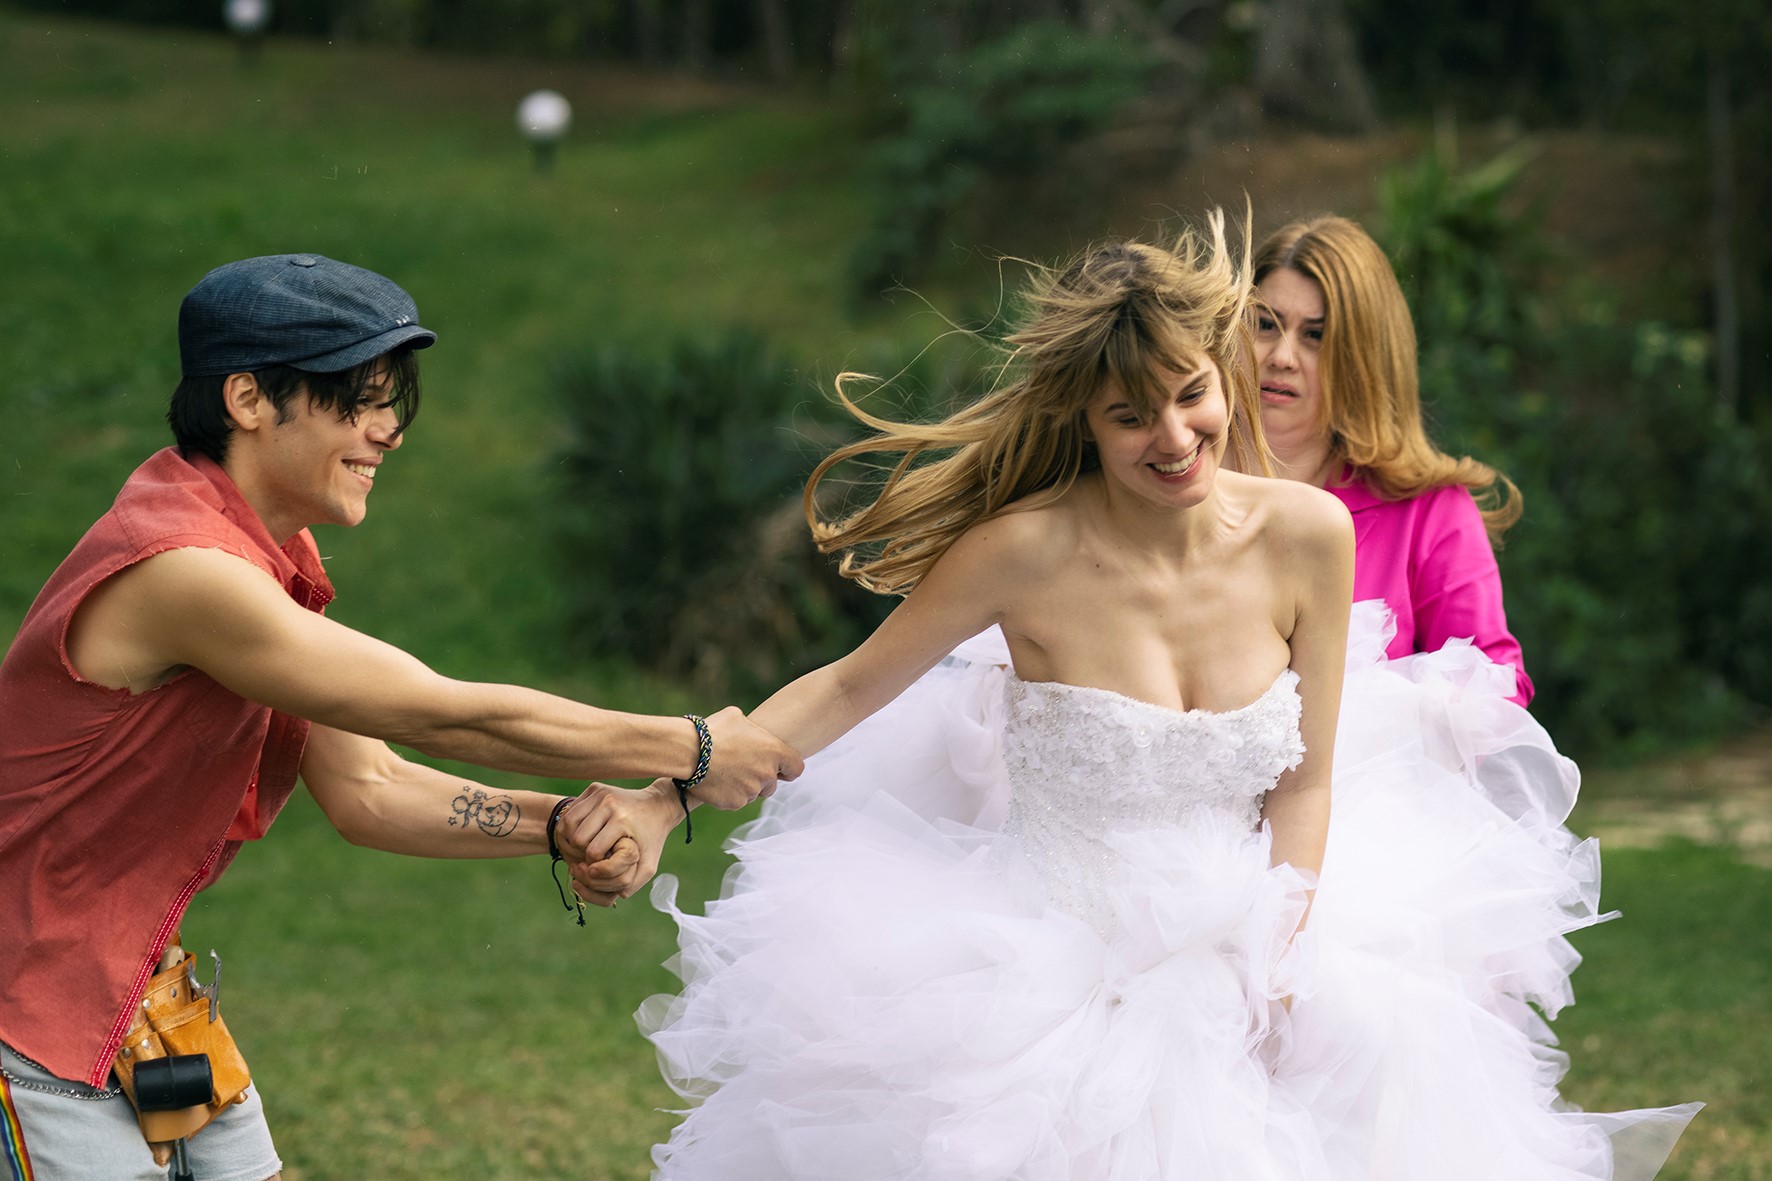 Eine junge Frau im Brautkleid scheint laufen zu wollen, wird aber von einem jungen Mann am Arm festgehalten. Beide lachen dabei. Im Hintergrund ist eine weitere Frau, die jedoch ernst guckt.